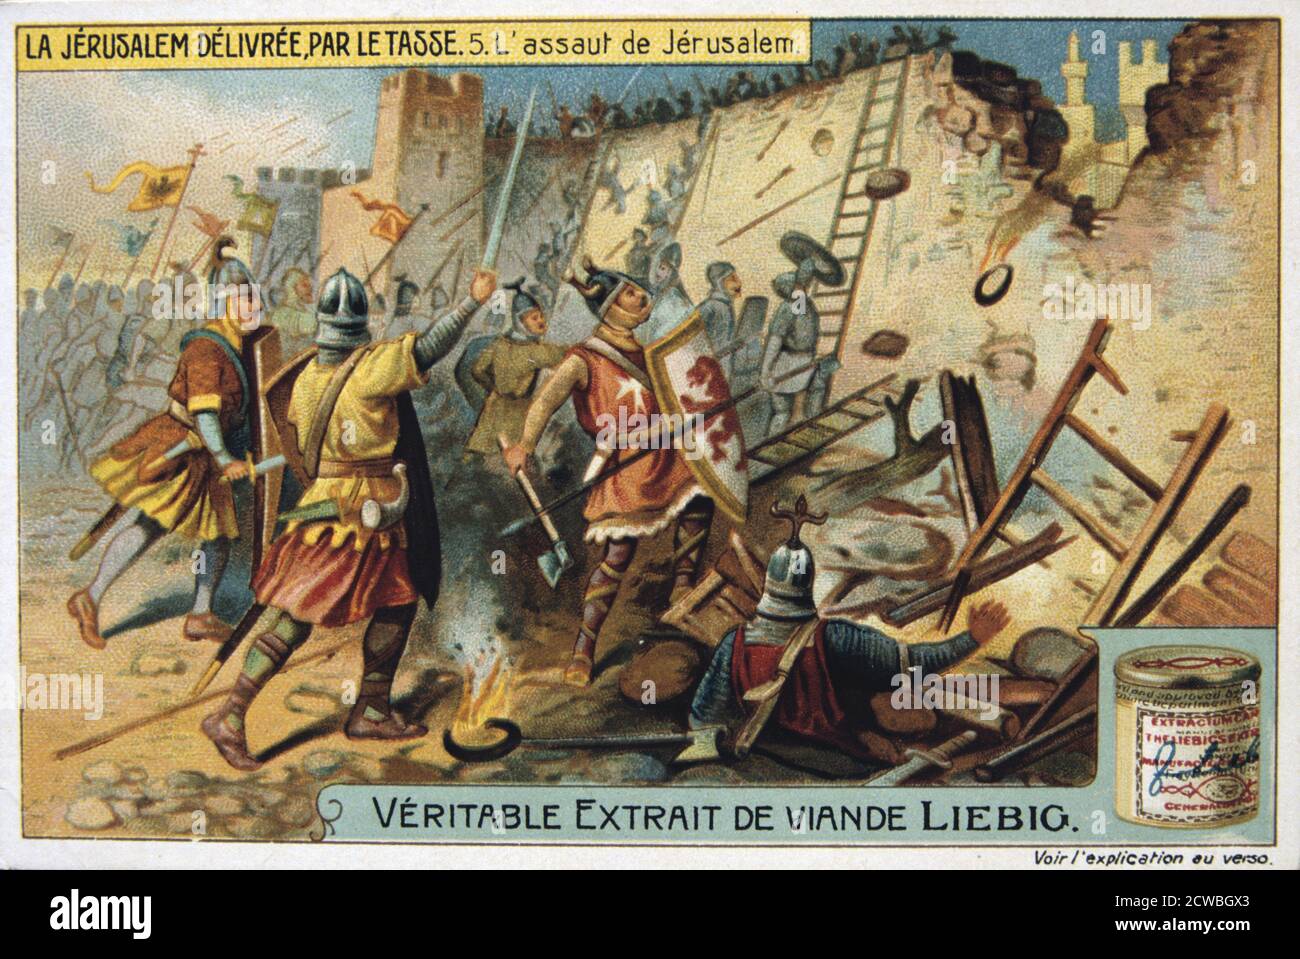 La Jerusalem deliveree par le Tasse, The assault on Jerusalem. 19th Century. Colour Lithograph. Private collection. Stock Photo